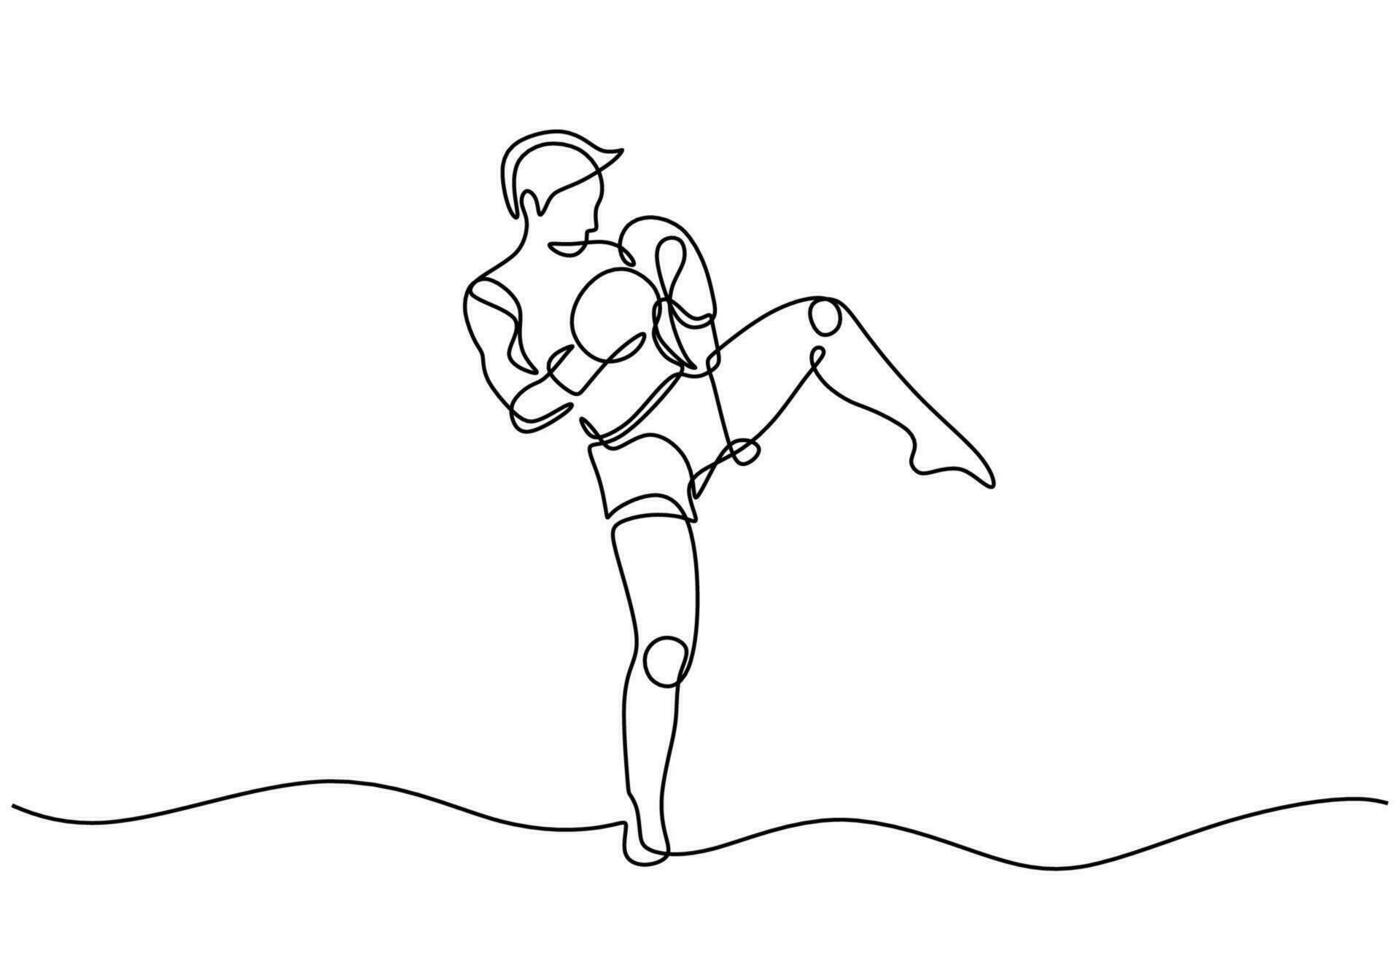 kickboxing continuo linea disegno. vettore illustrazione